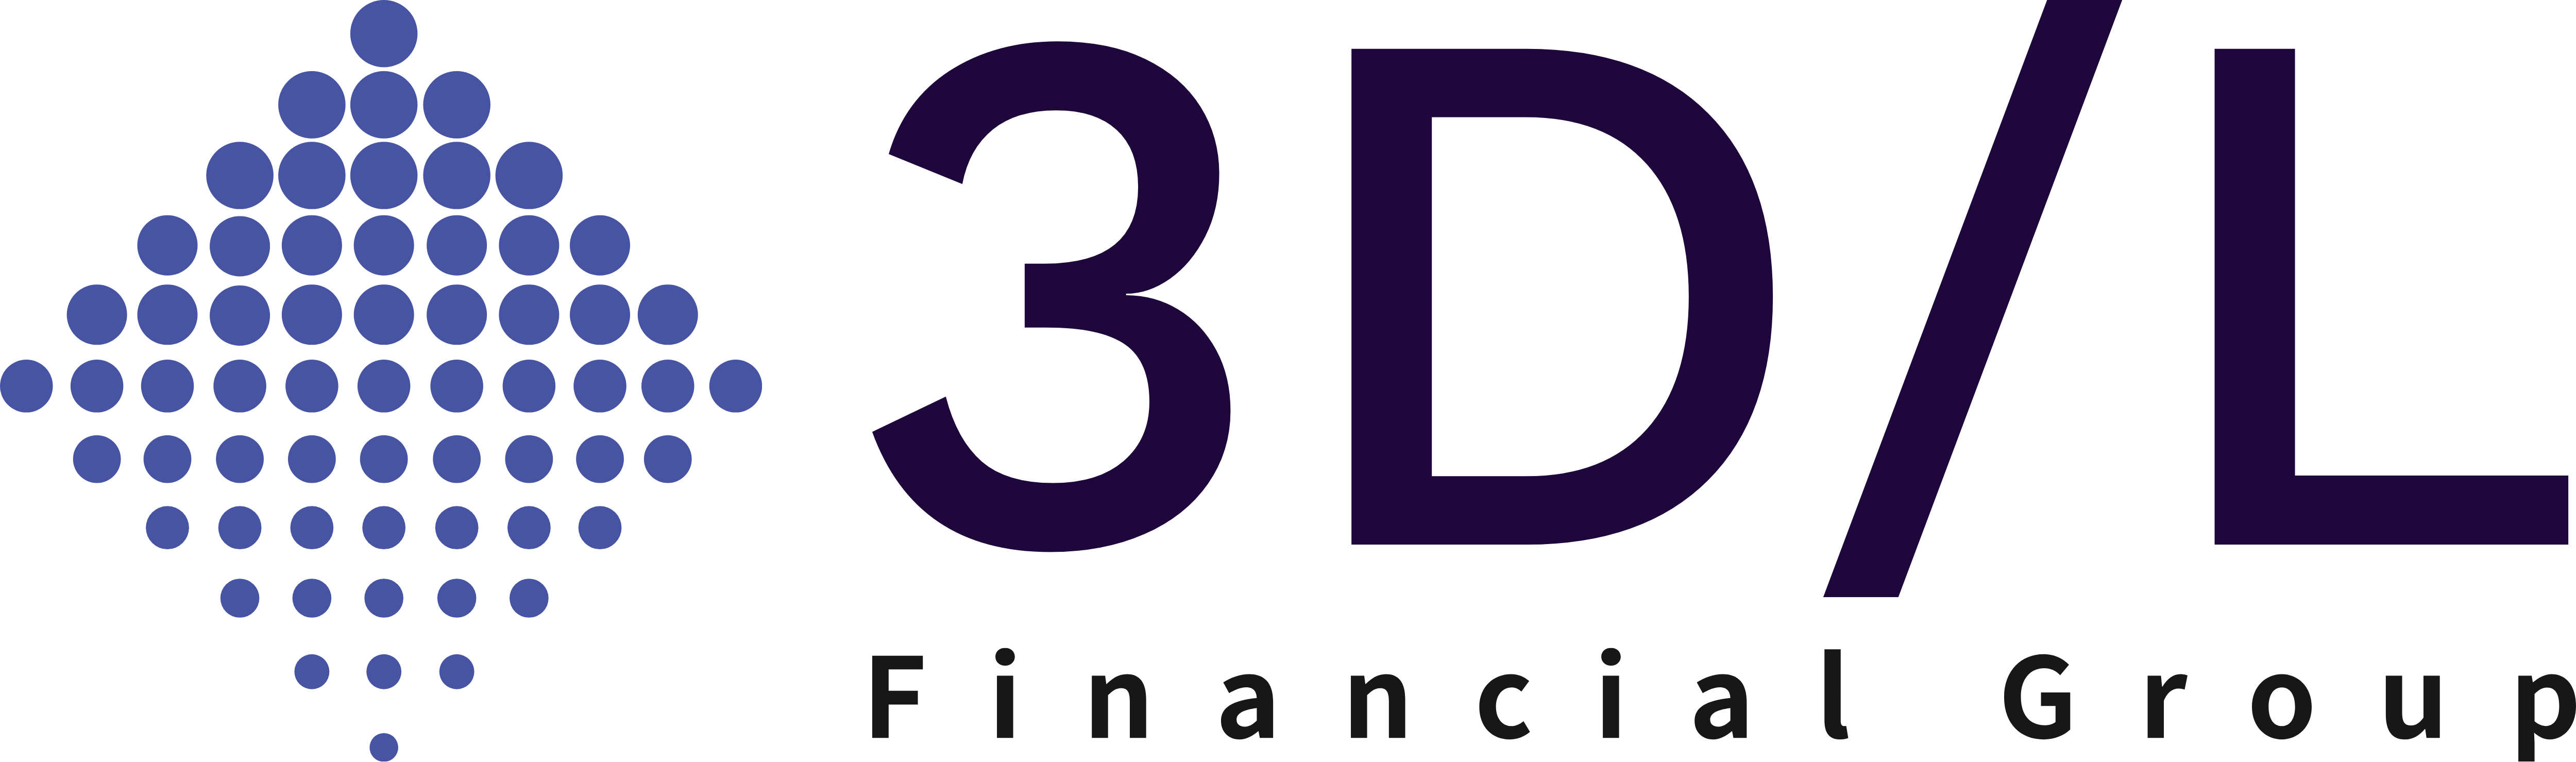 3D/L Financial Group